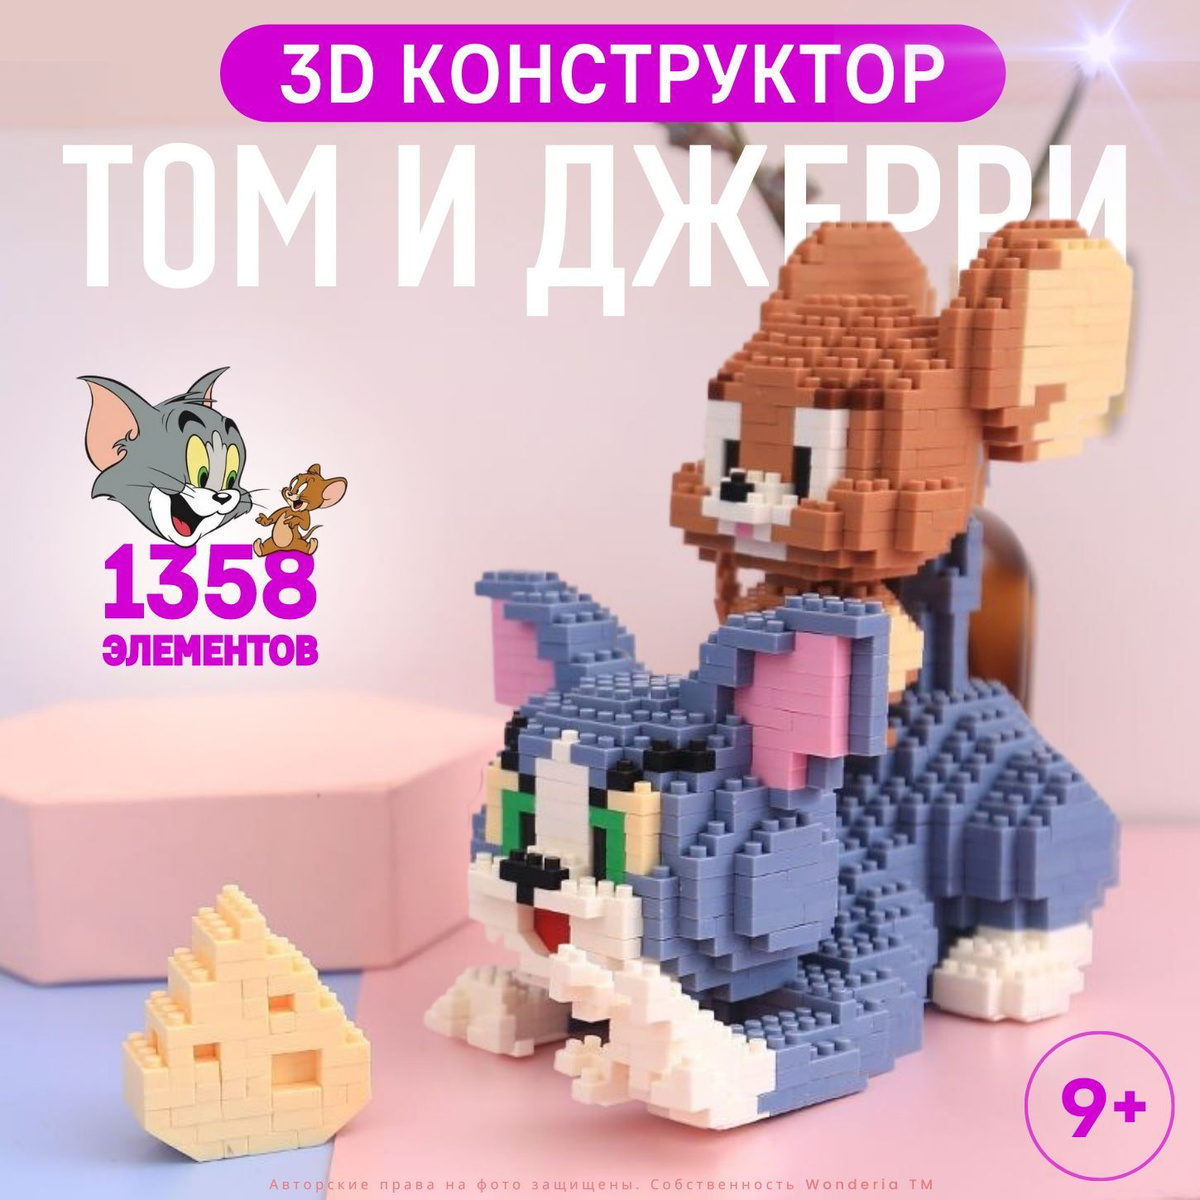 3D конструктор «Том и Джерри» 1119082407